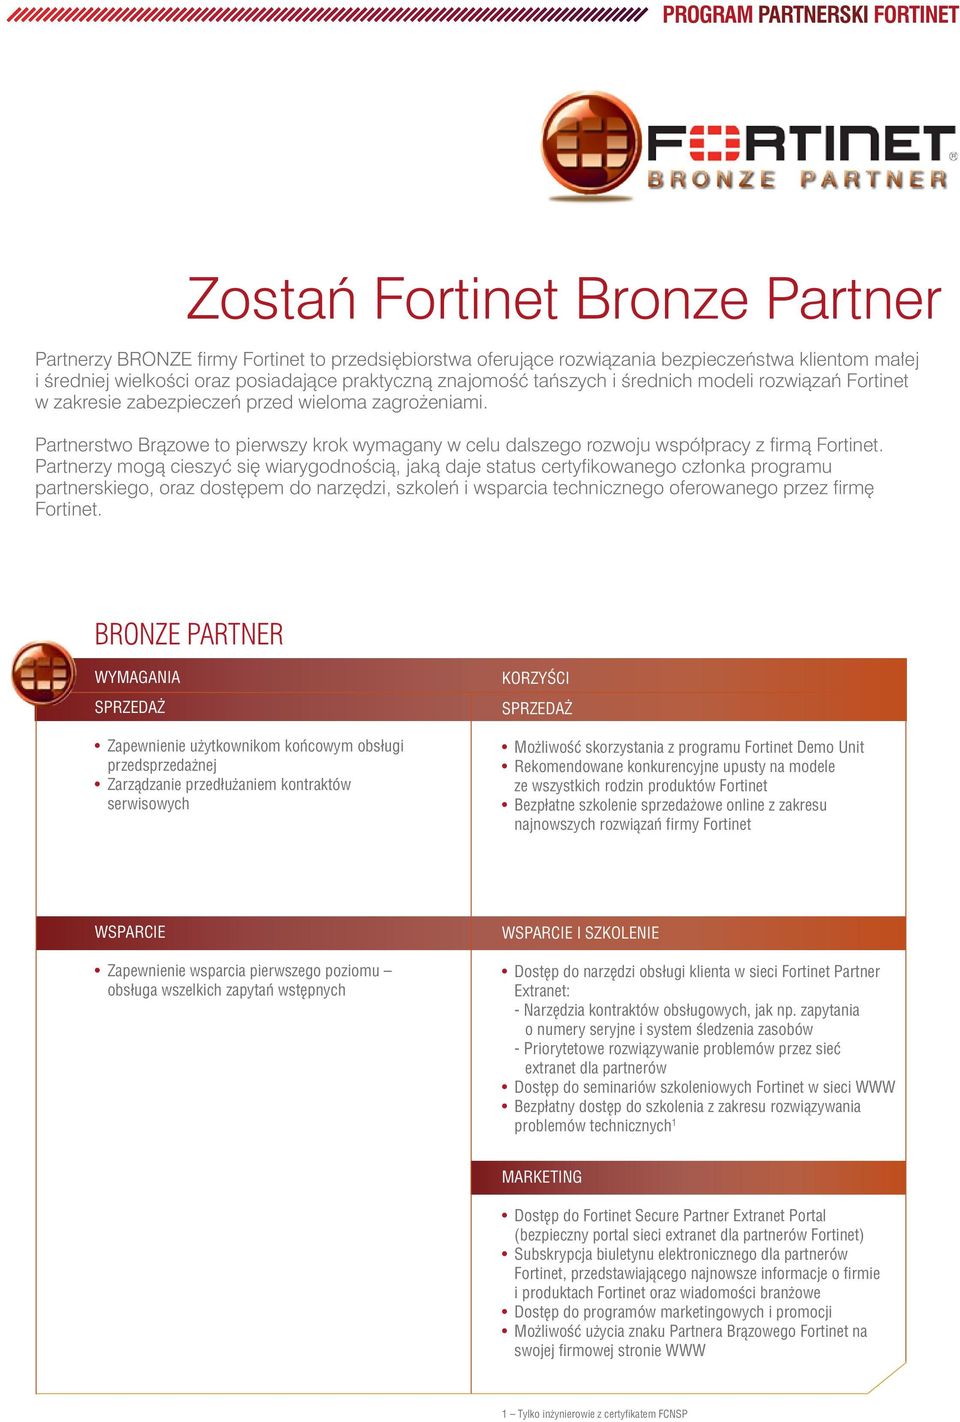 Partnerzy mogą cieszyć się wiarygodnością, jaką daje status certyfikowanego członka programu partnerskiego, oraz dostępem do narzędzi, szkoleń i wsparcia technicznego oferowanego przez firmę Fortinet.